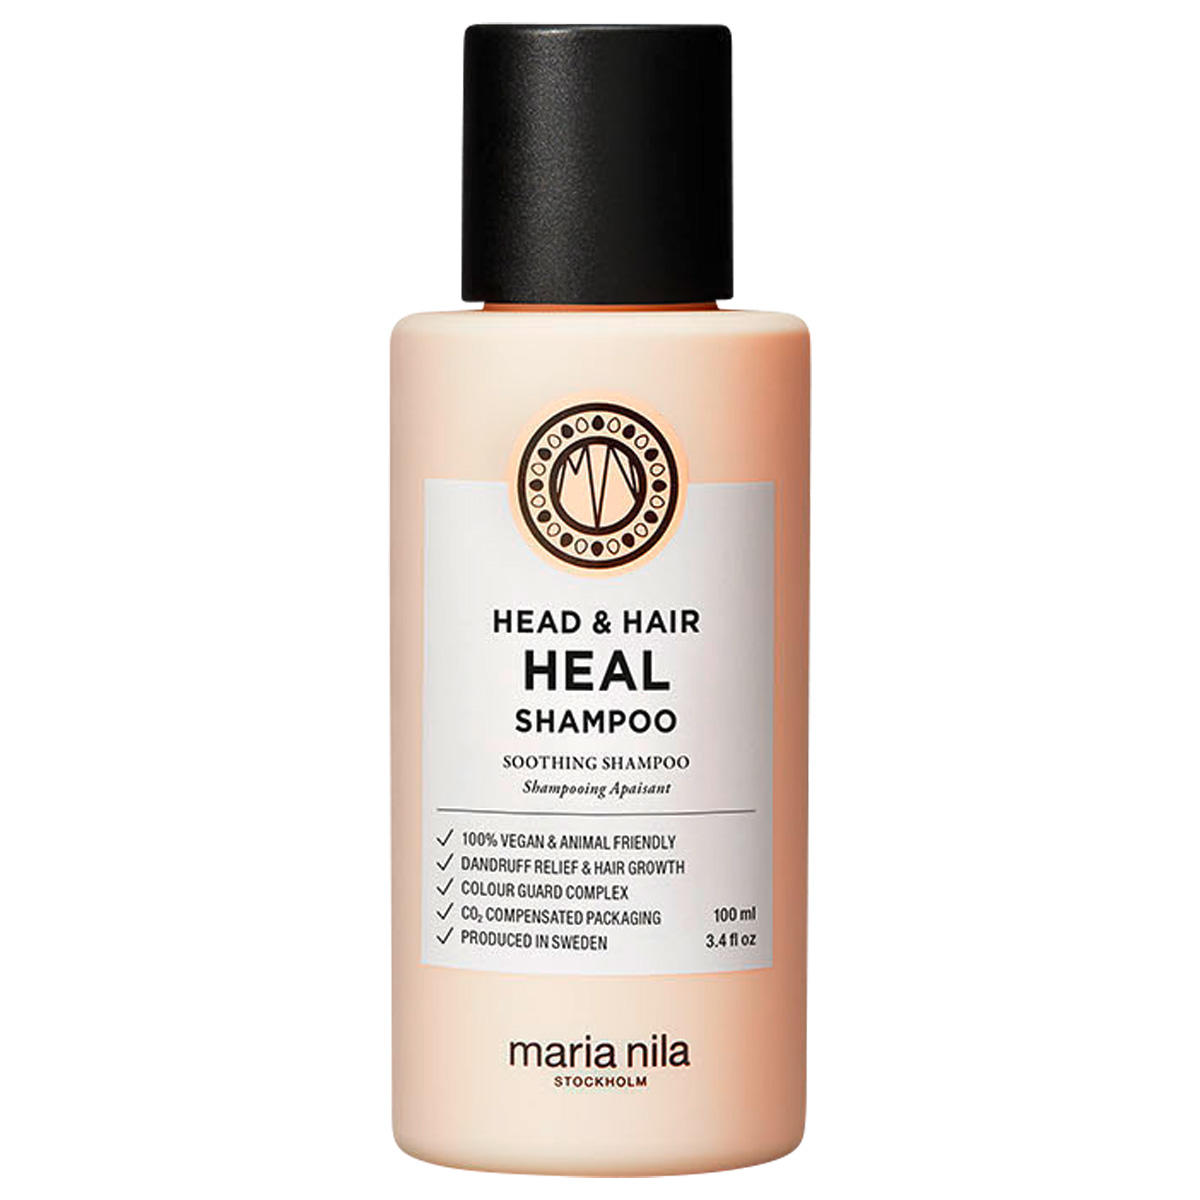 Maria Nila Head & Hair Heal Shampoo 100 ml - 1